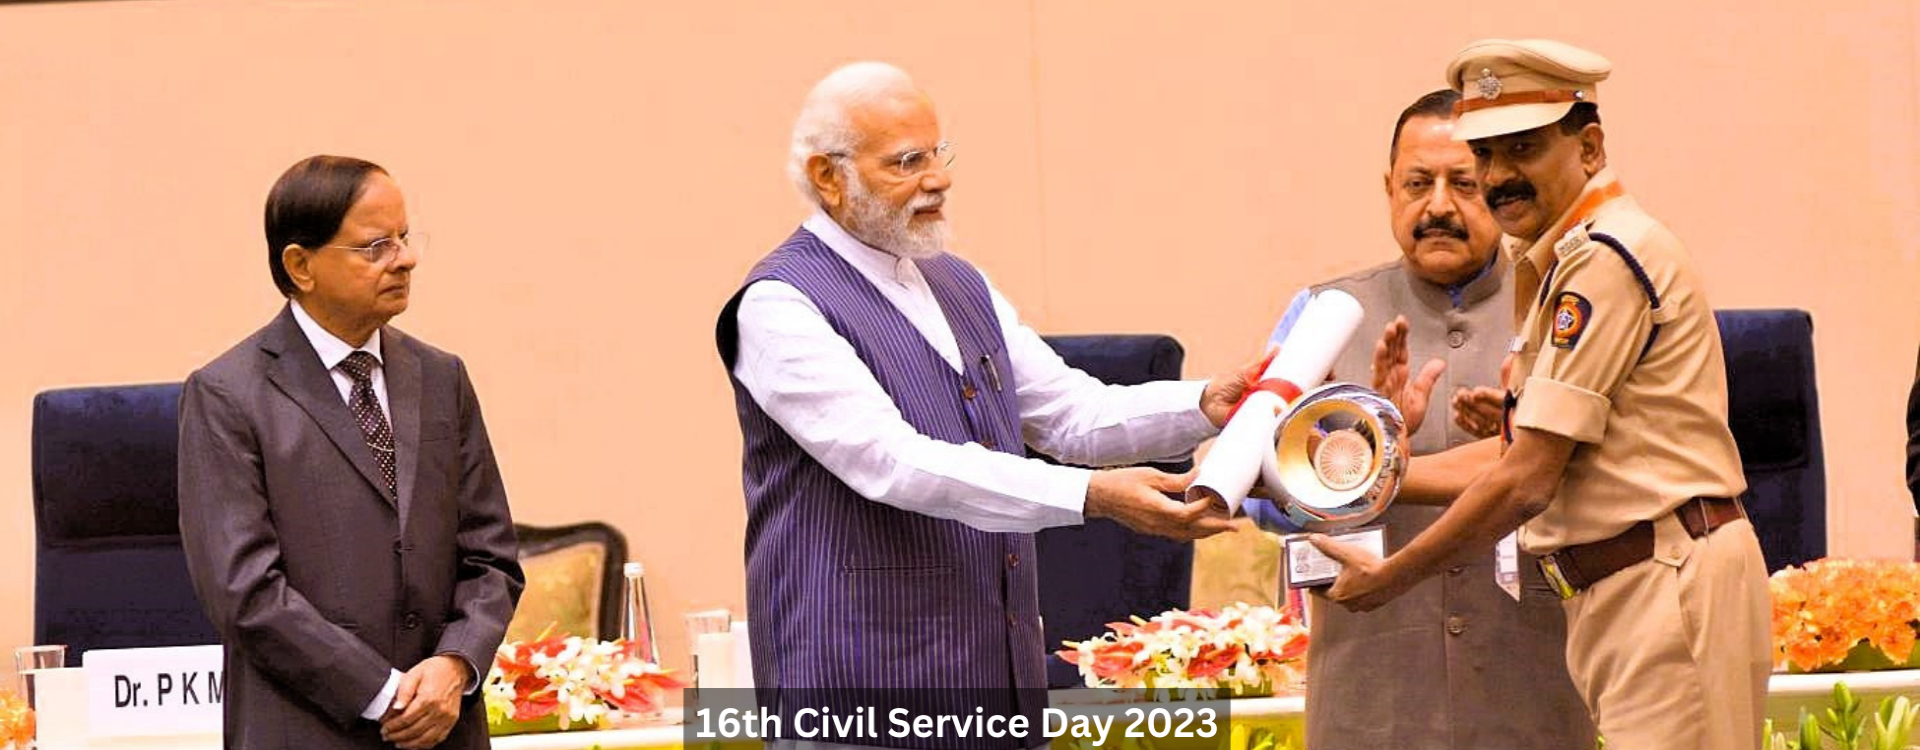 16th Civil Service Day 2023